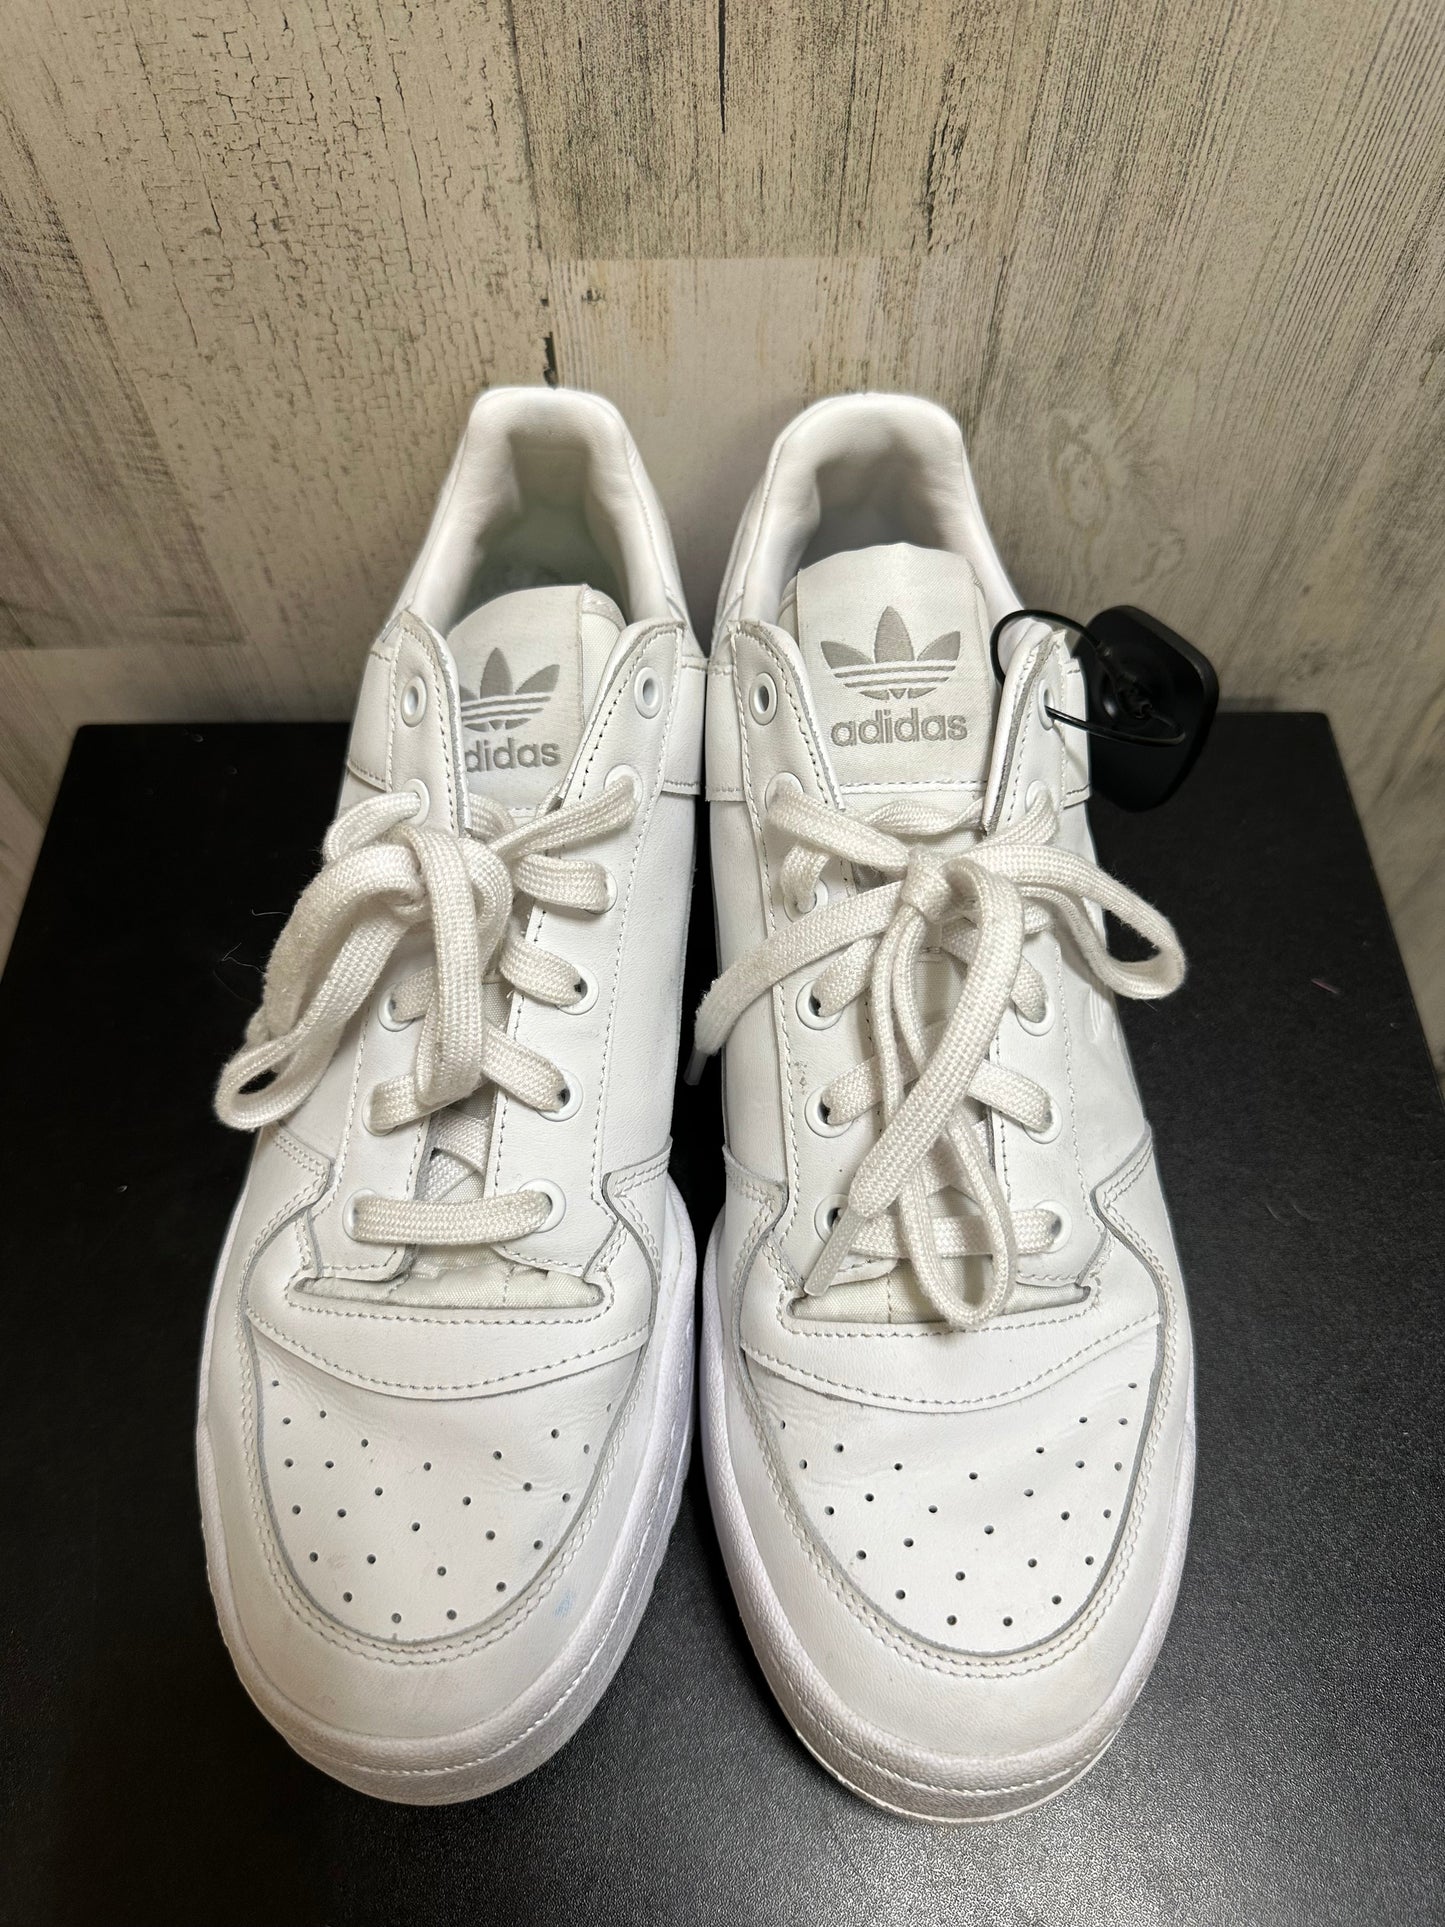 White Shoes Athletic Adidas, Size 11